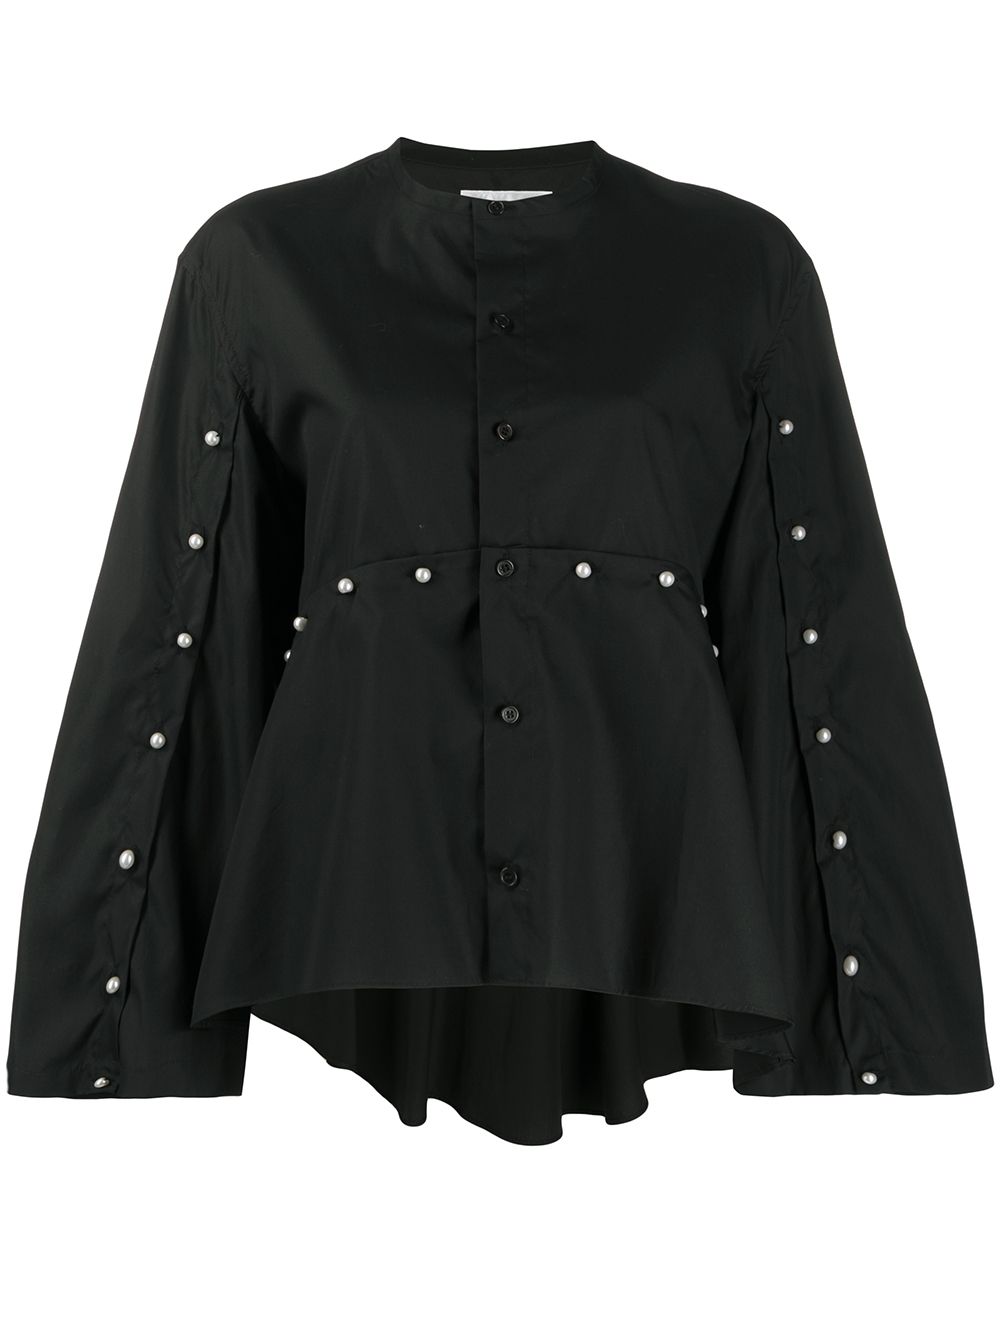 фото Comme des garçons noir kei ninomiya блузка с искусственным жемчугом